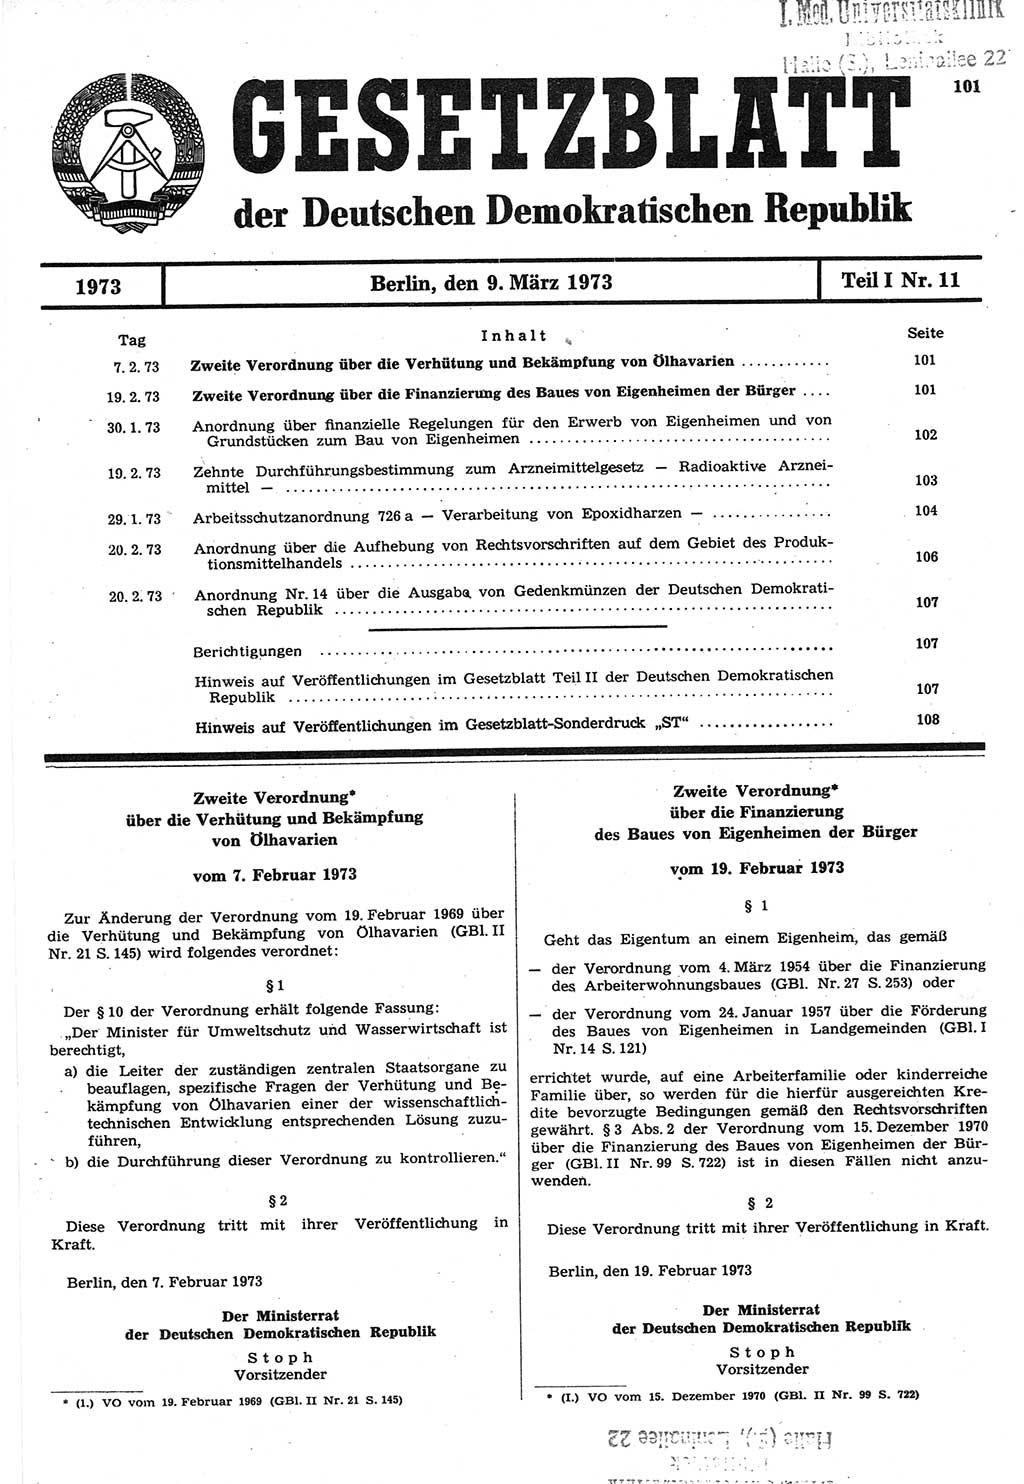 Gesetzblatt (GBl.) der Deutschen Demokratischen Republik (DDR) Teil Ⅰ 1973, Seite 101 (GBl. DDR Ⅰ 1973, S. 101)